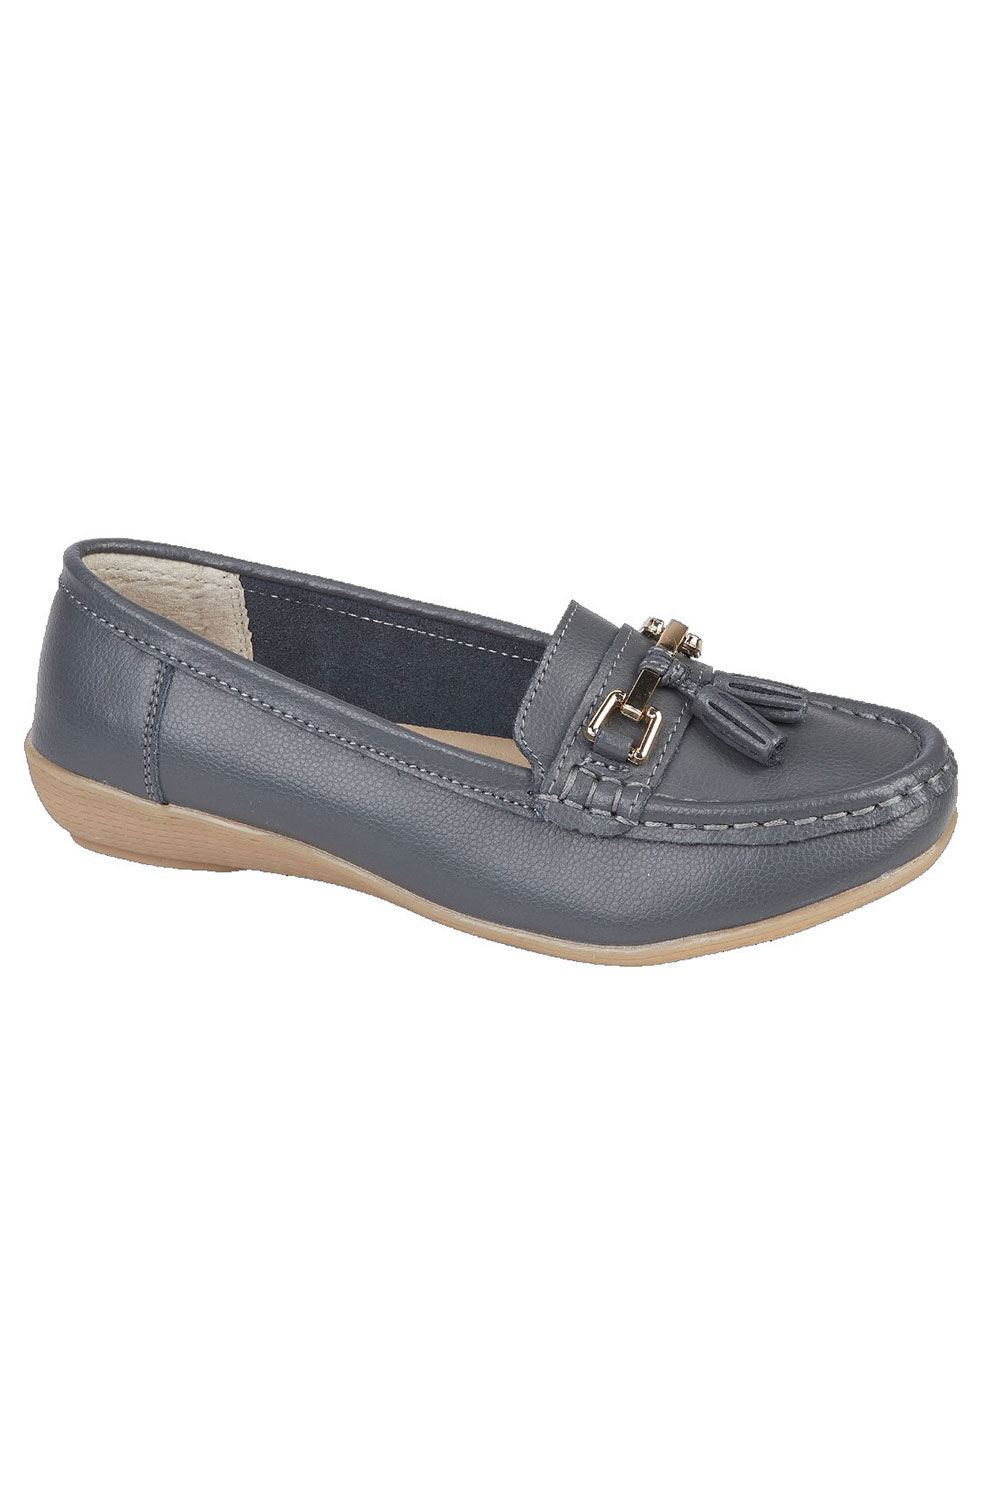 Jo & Joe Women’s Blue Leather Moccasin Shoes with Tassel Detail, Size: 6